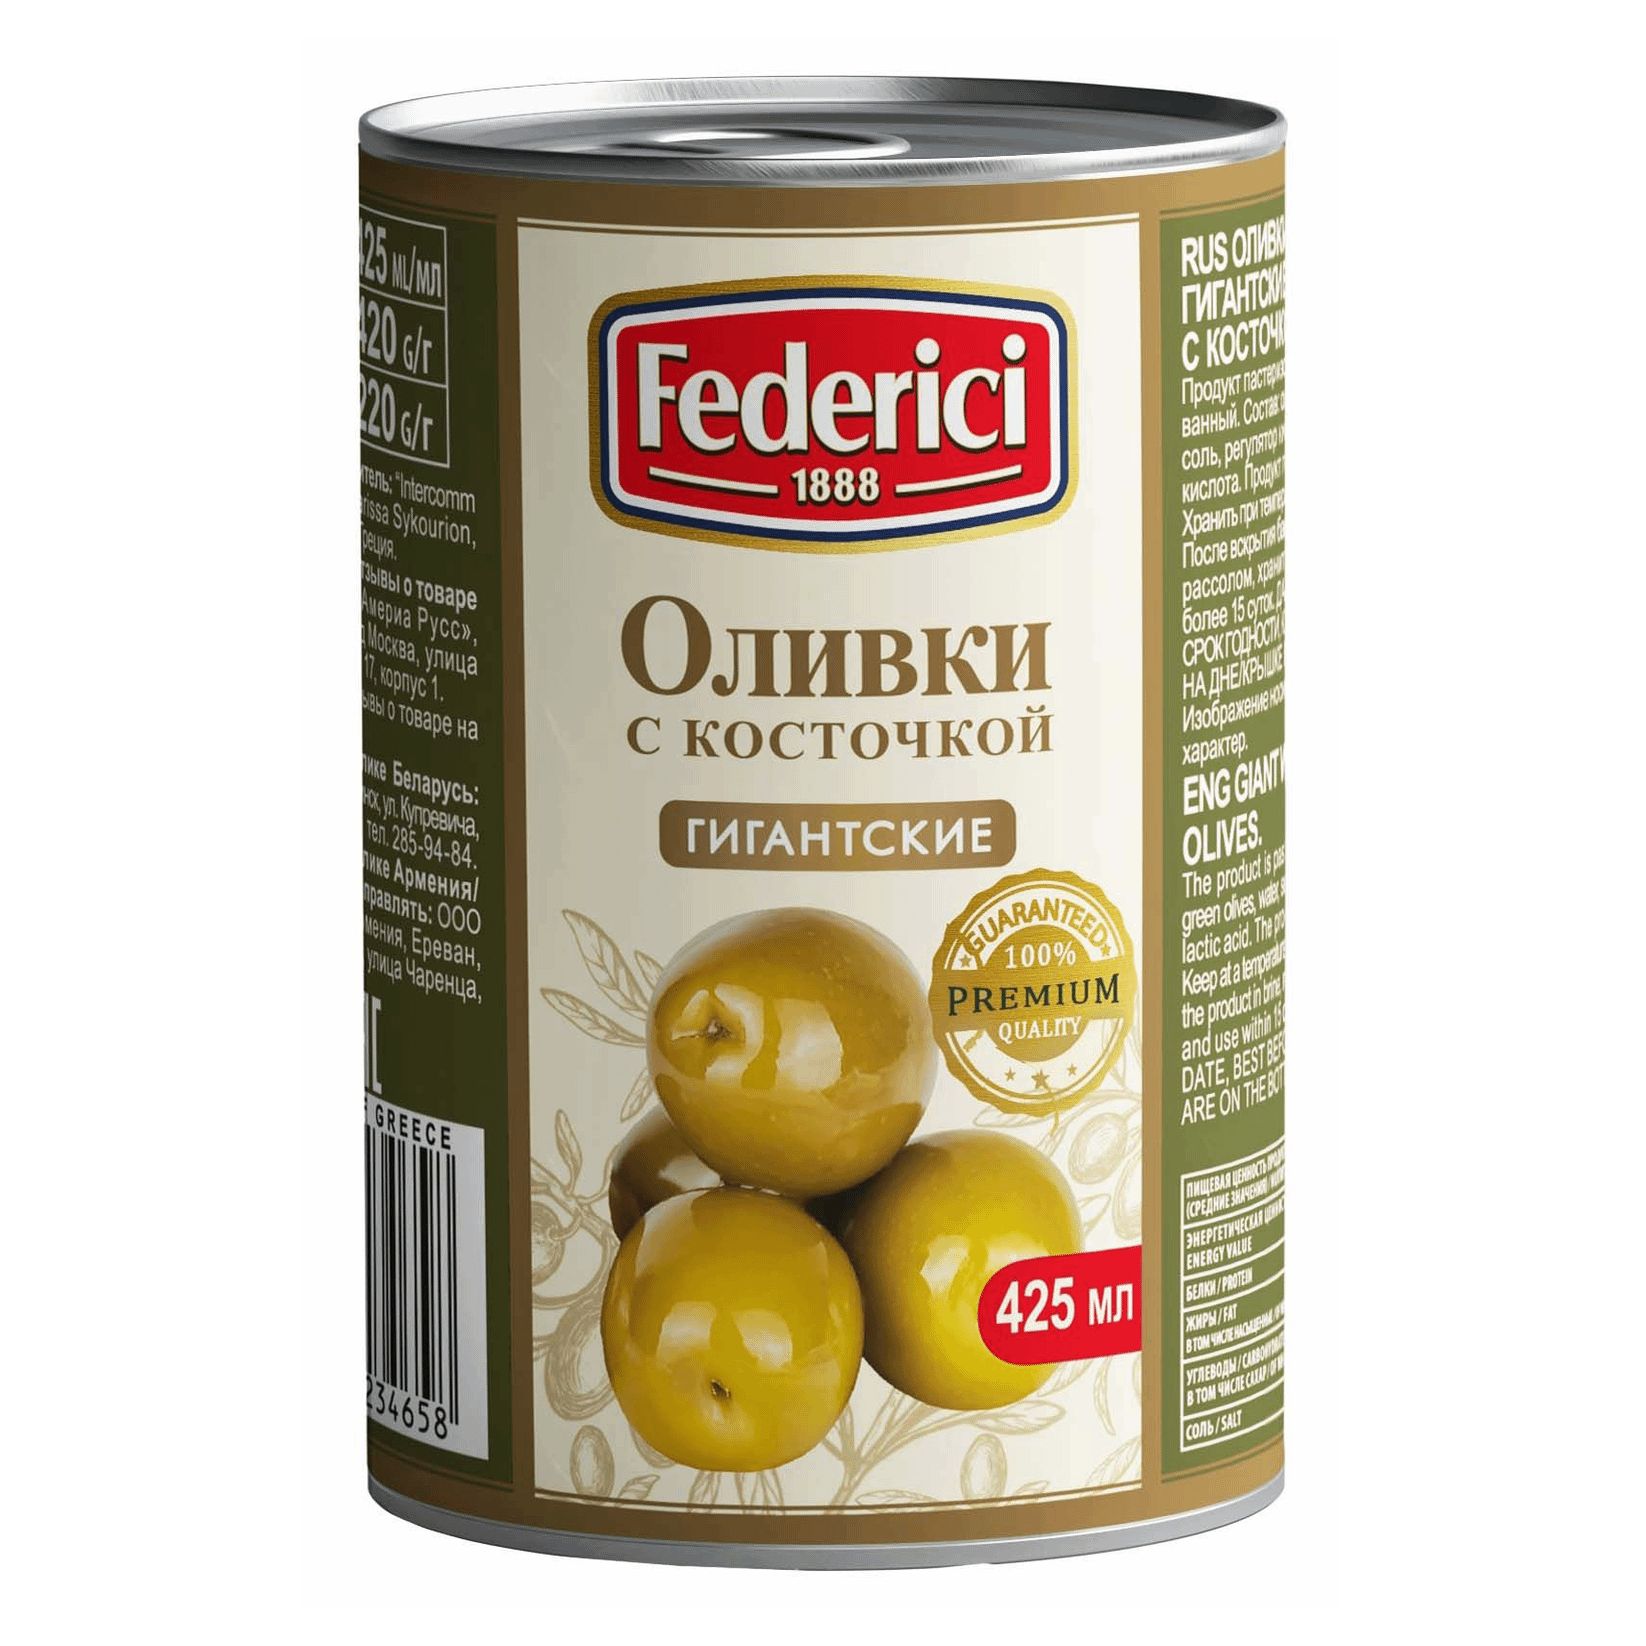 Маслины Federici Гигантские с косточкой, 420 г маслины каламата just greece с косточкой 360 г